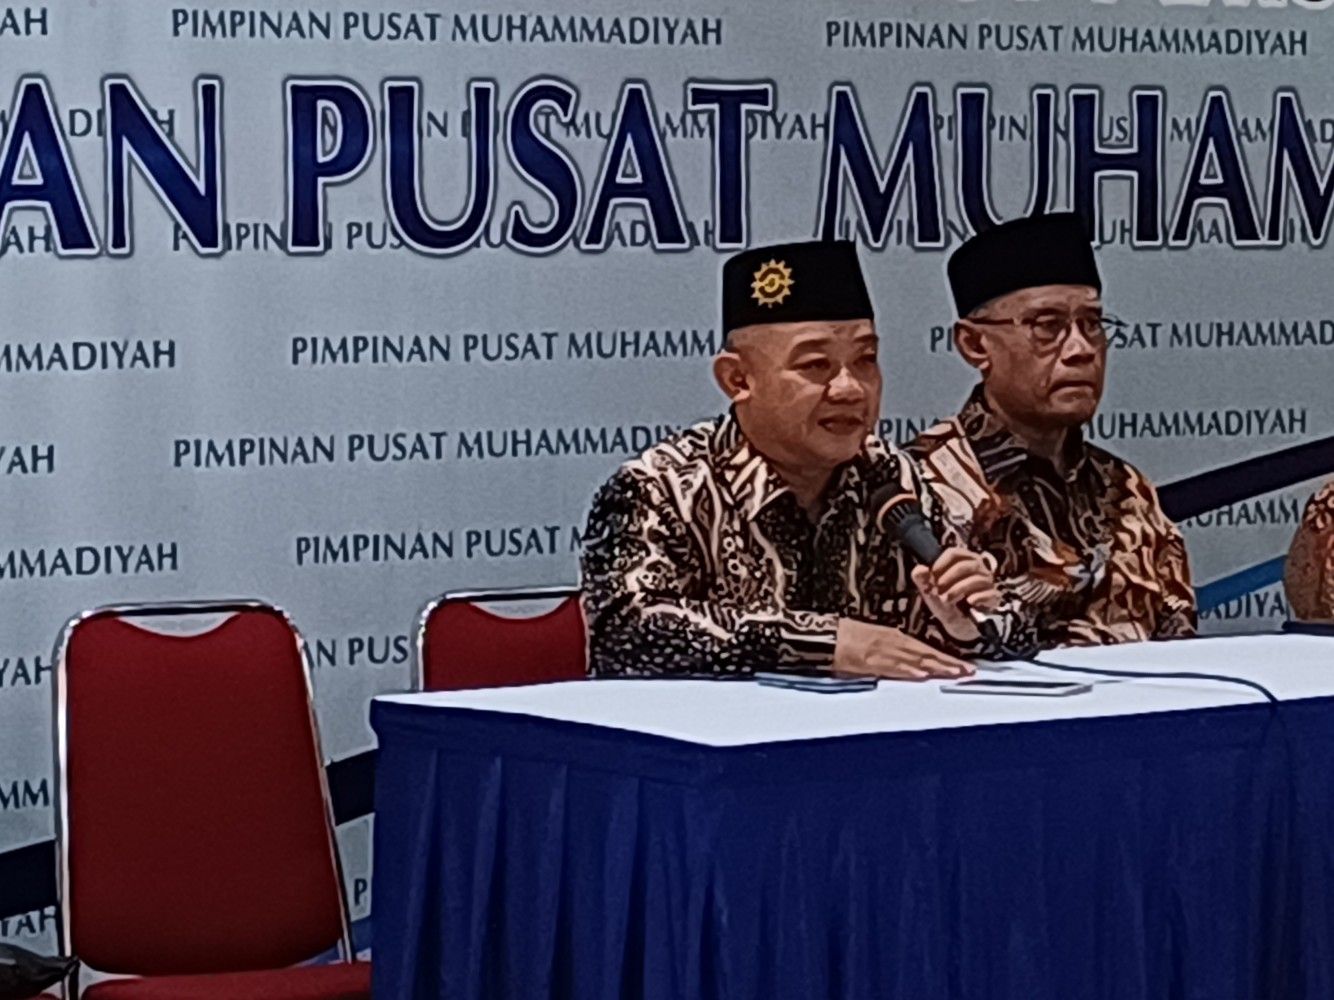 PP Muhammadiyah Akan Uji Publik 3 Paslon Capres-Cawapres